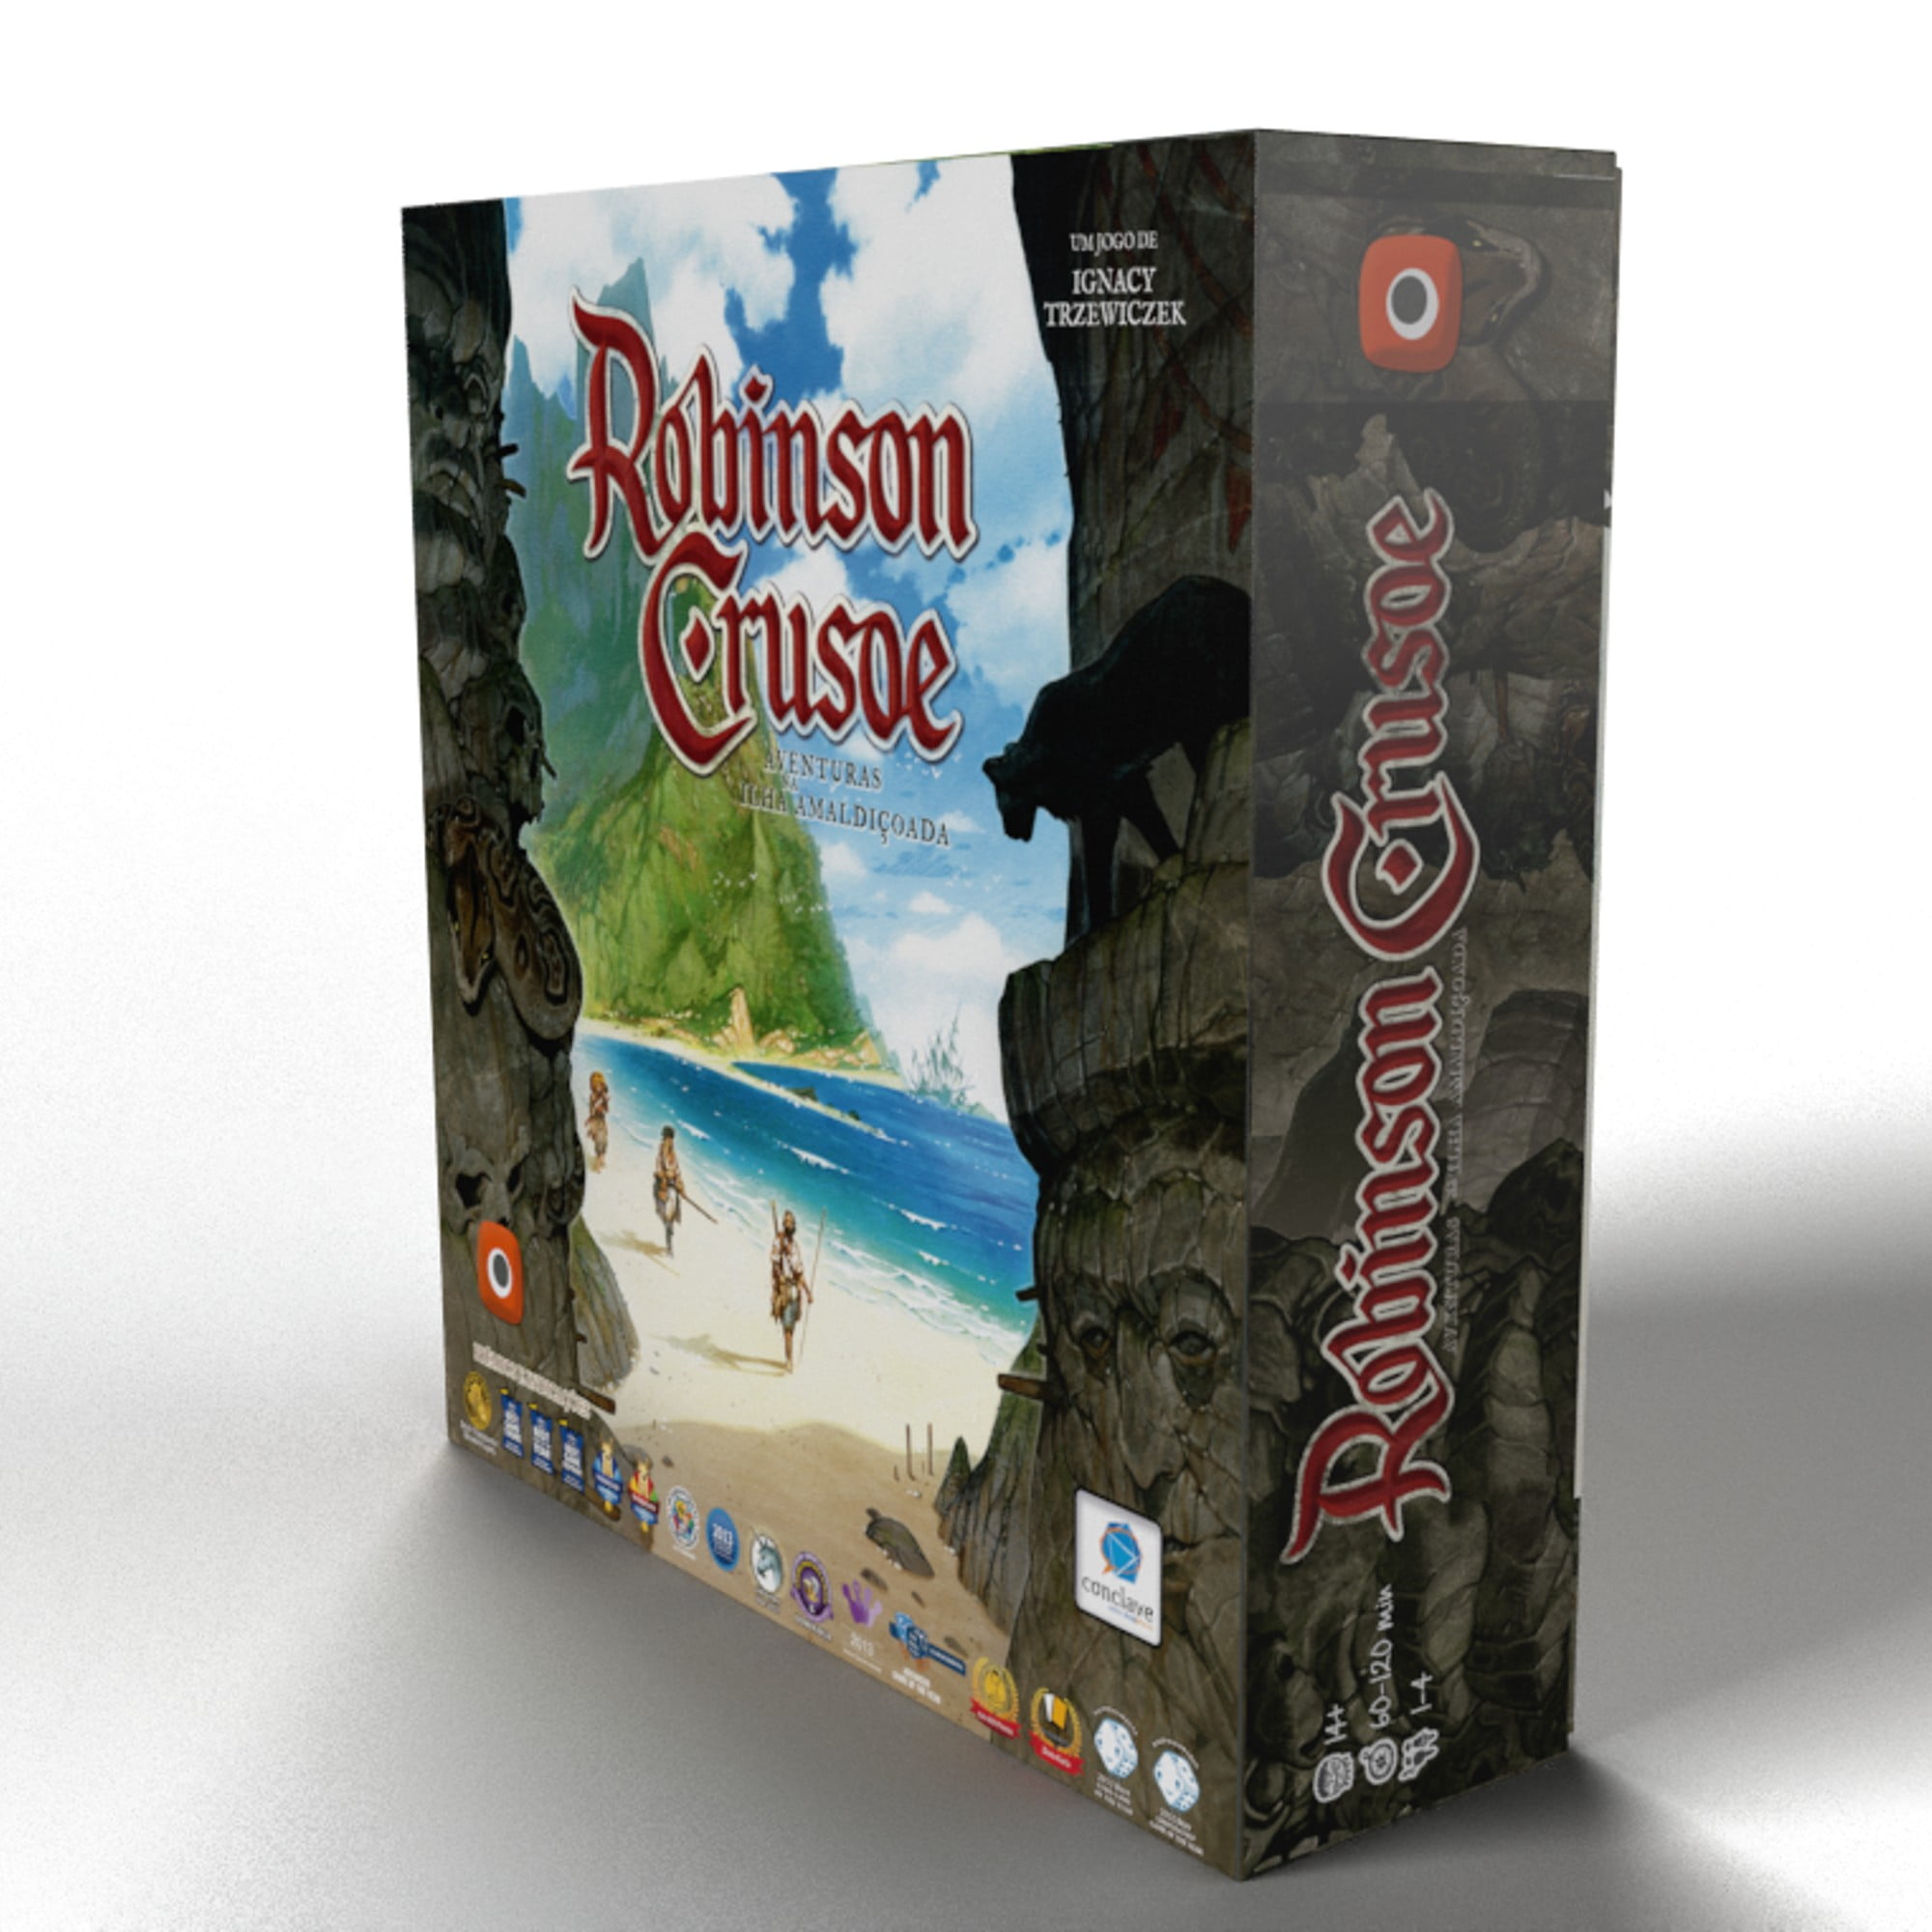 Robinson Crusoé - Aventuras na Ilha Amaldiçoada board game